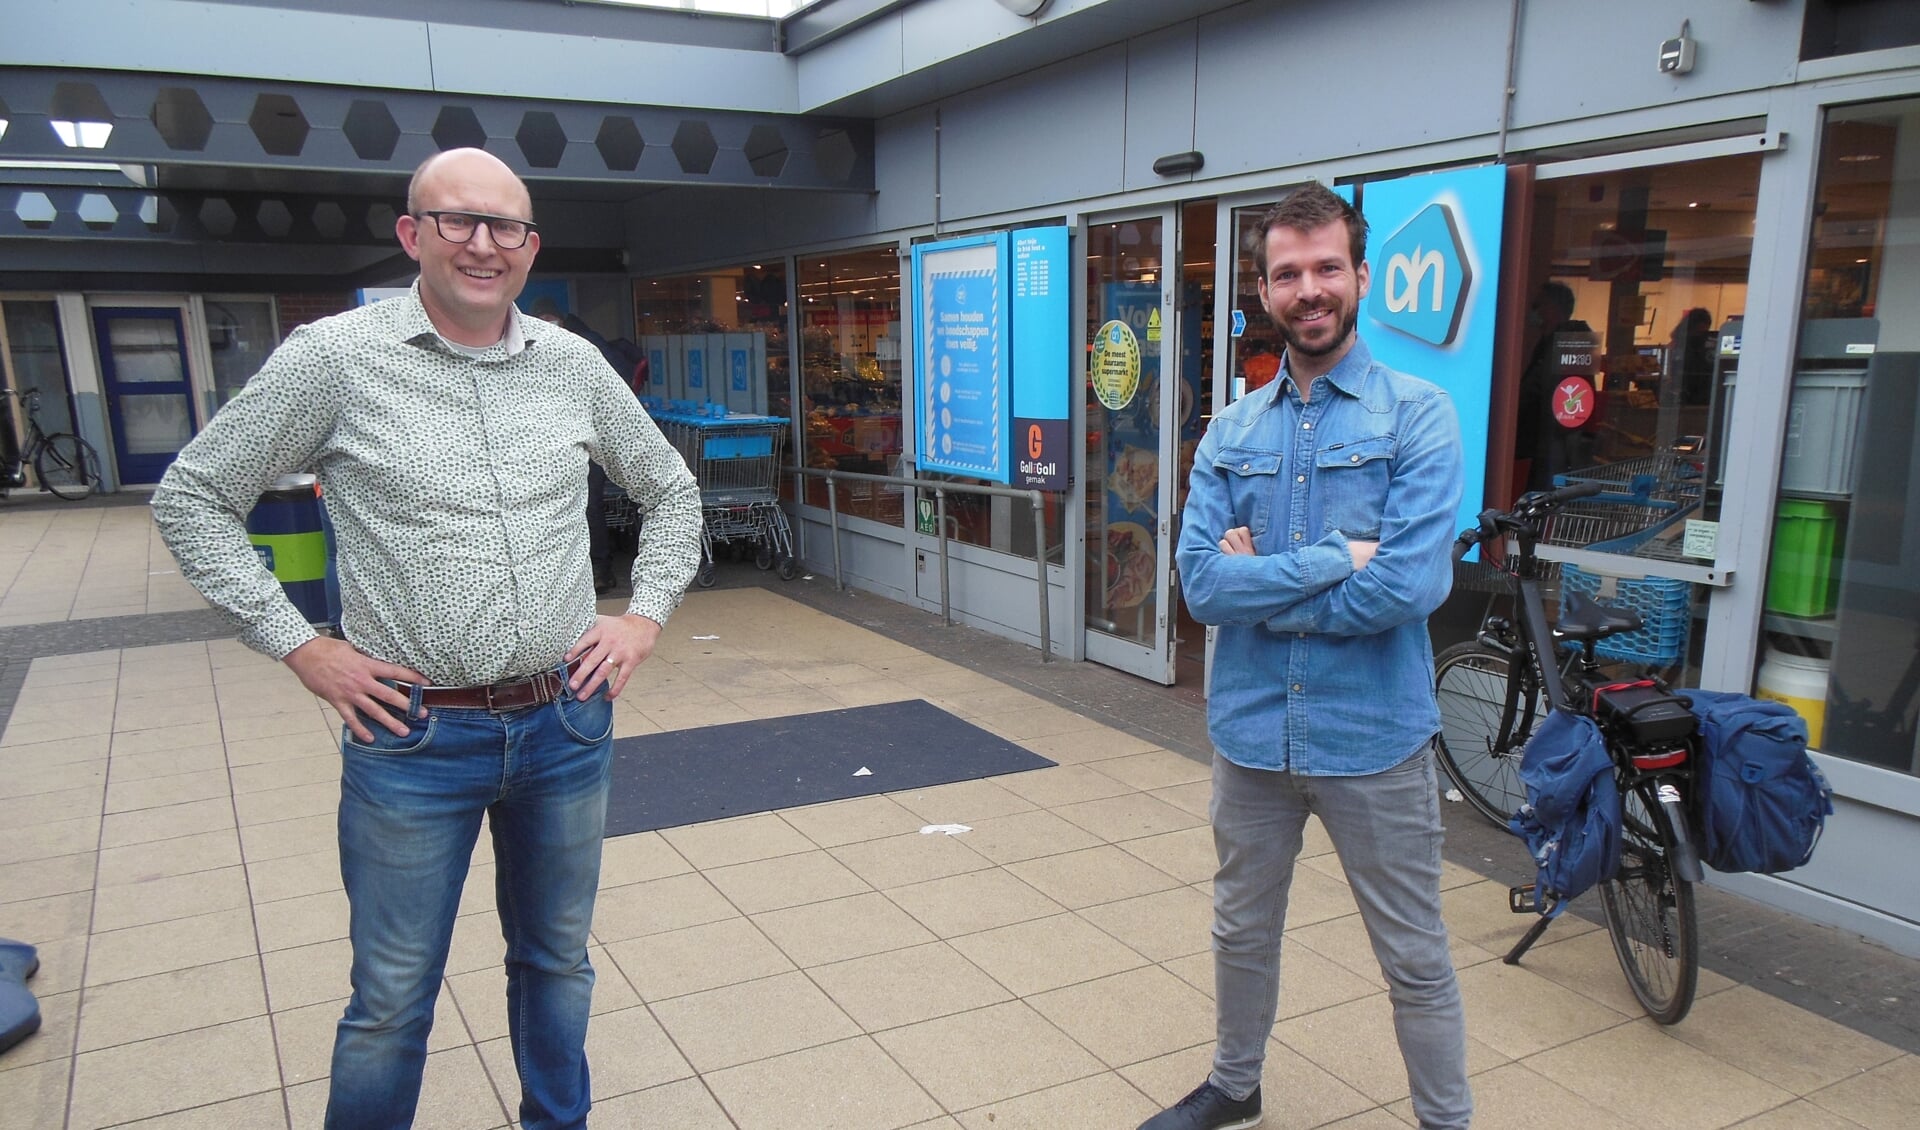 Bernard Oosterink (links) en Thomas de Jong zien de upgrading van winkelcentrum De Brink helemaal zitten. “Een win-win situatie.” Foto: Eric Klop